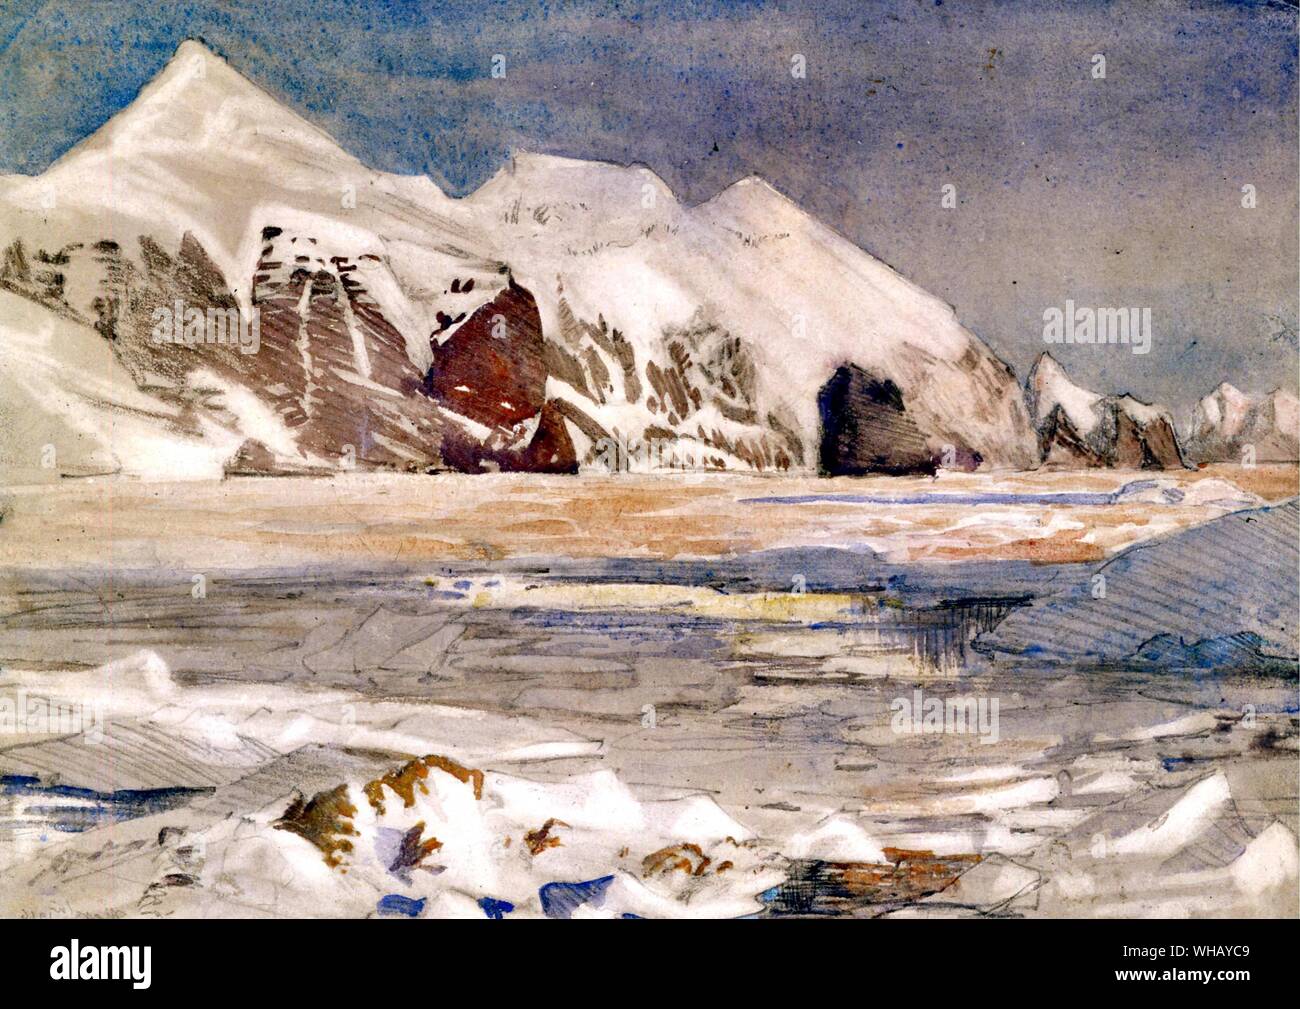 La côte de l'île de l'éléphant 1916 sur l'une des rares soirées lumineuses vécues par les hommes laissés derrière, par George Marston (1882-1940), l'expédition de Shackleton. Antarctique : le dernier continent par Ian Cameron, page 229. Banque D'Images